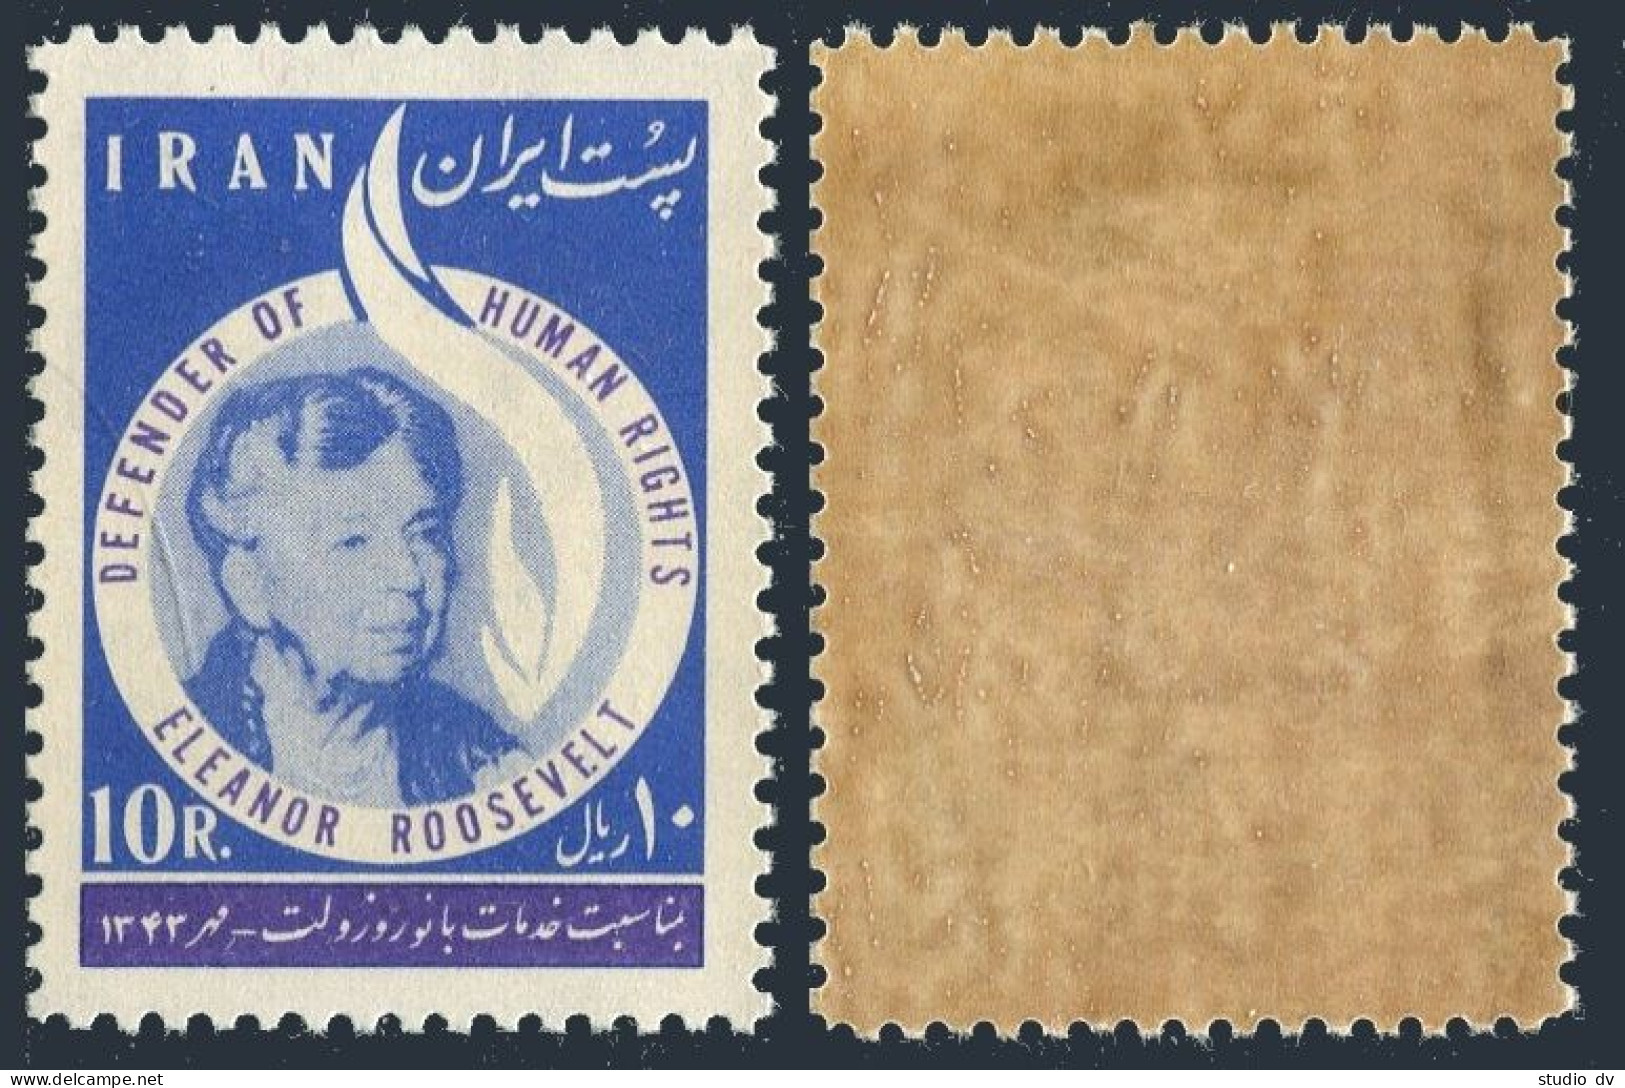 Iran 1300,MNH Dark Gum.Michel 1225. Eleanor Roosevelt,1964. - Iran